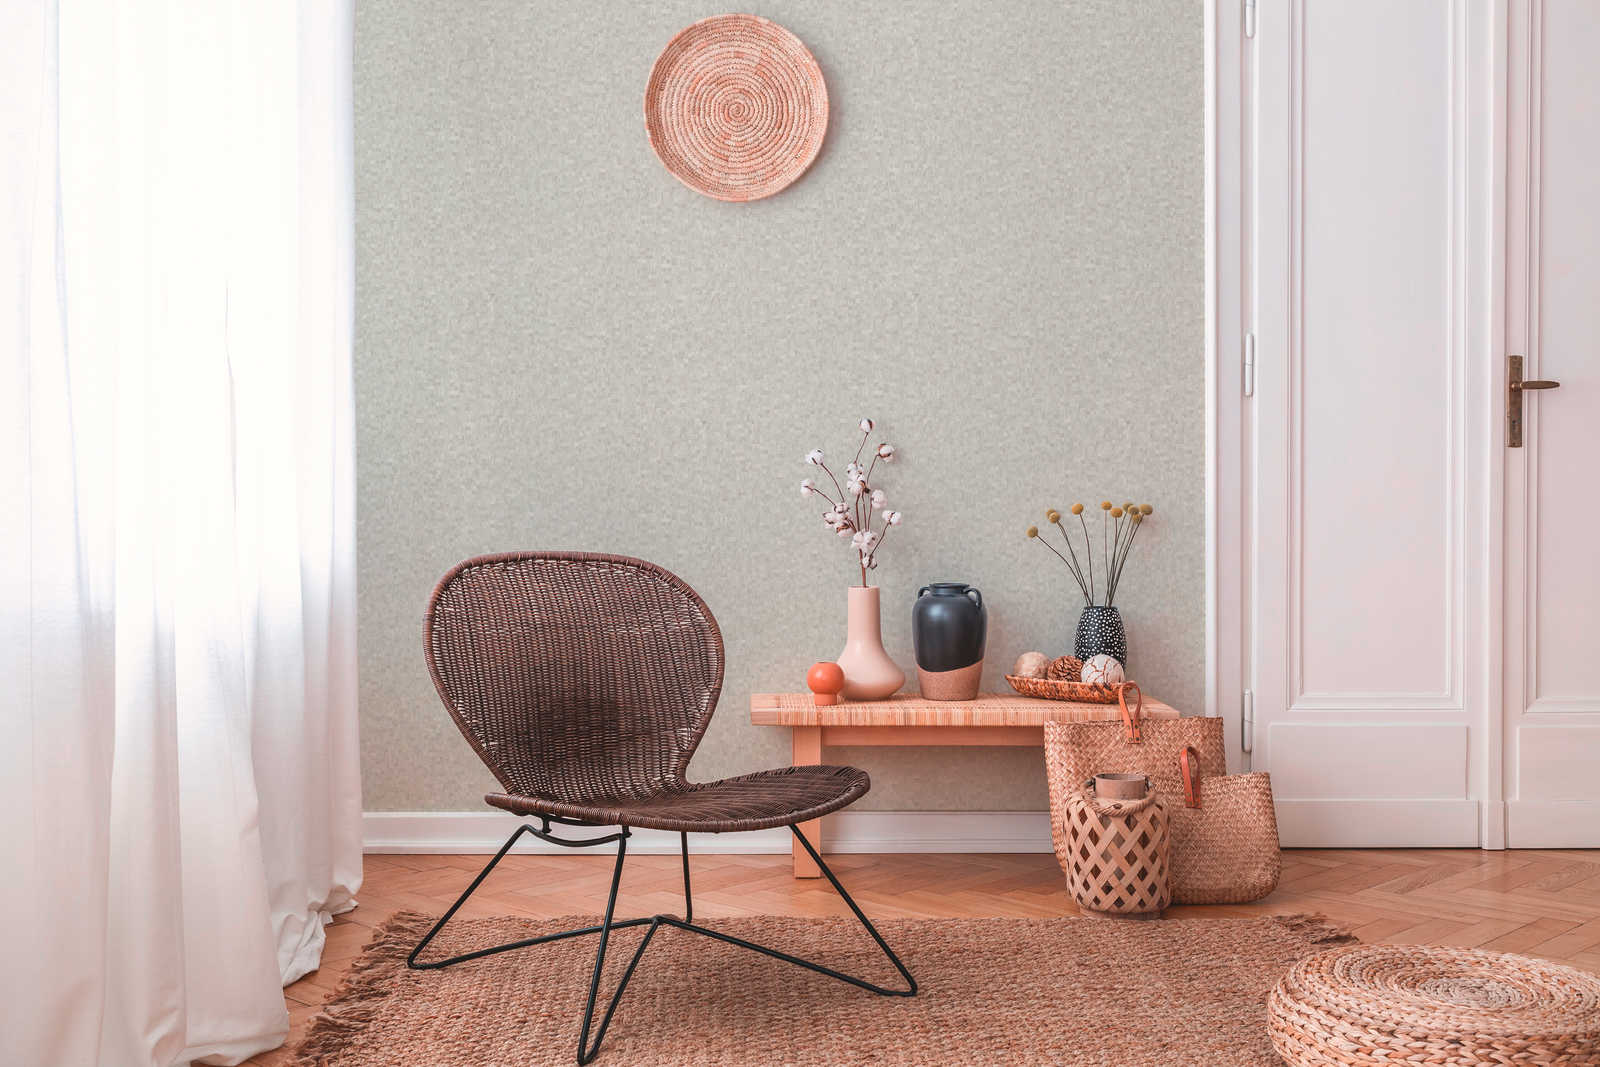             Textured wallpaper ethnic pattern in mosaic style - cream, beige
        